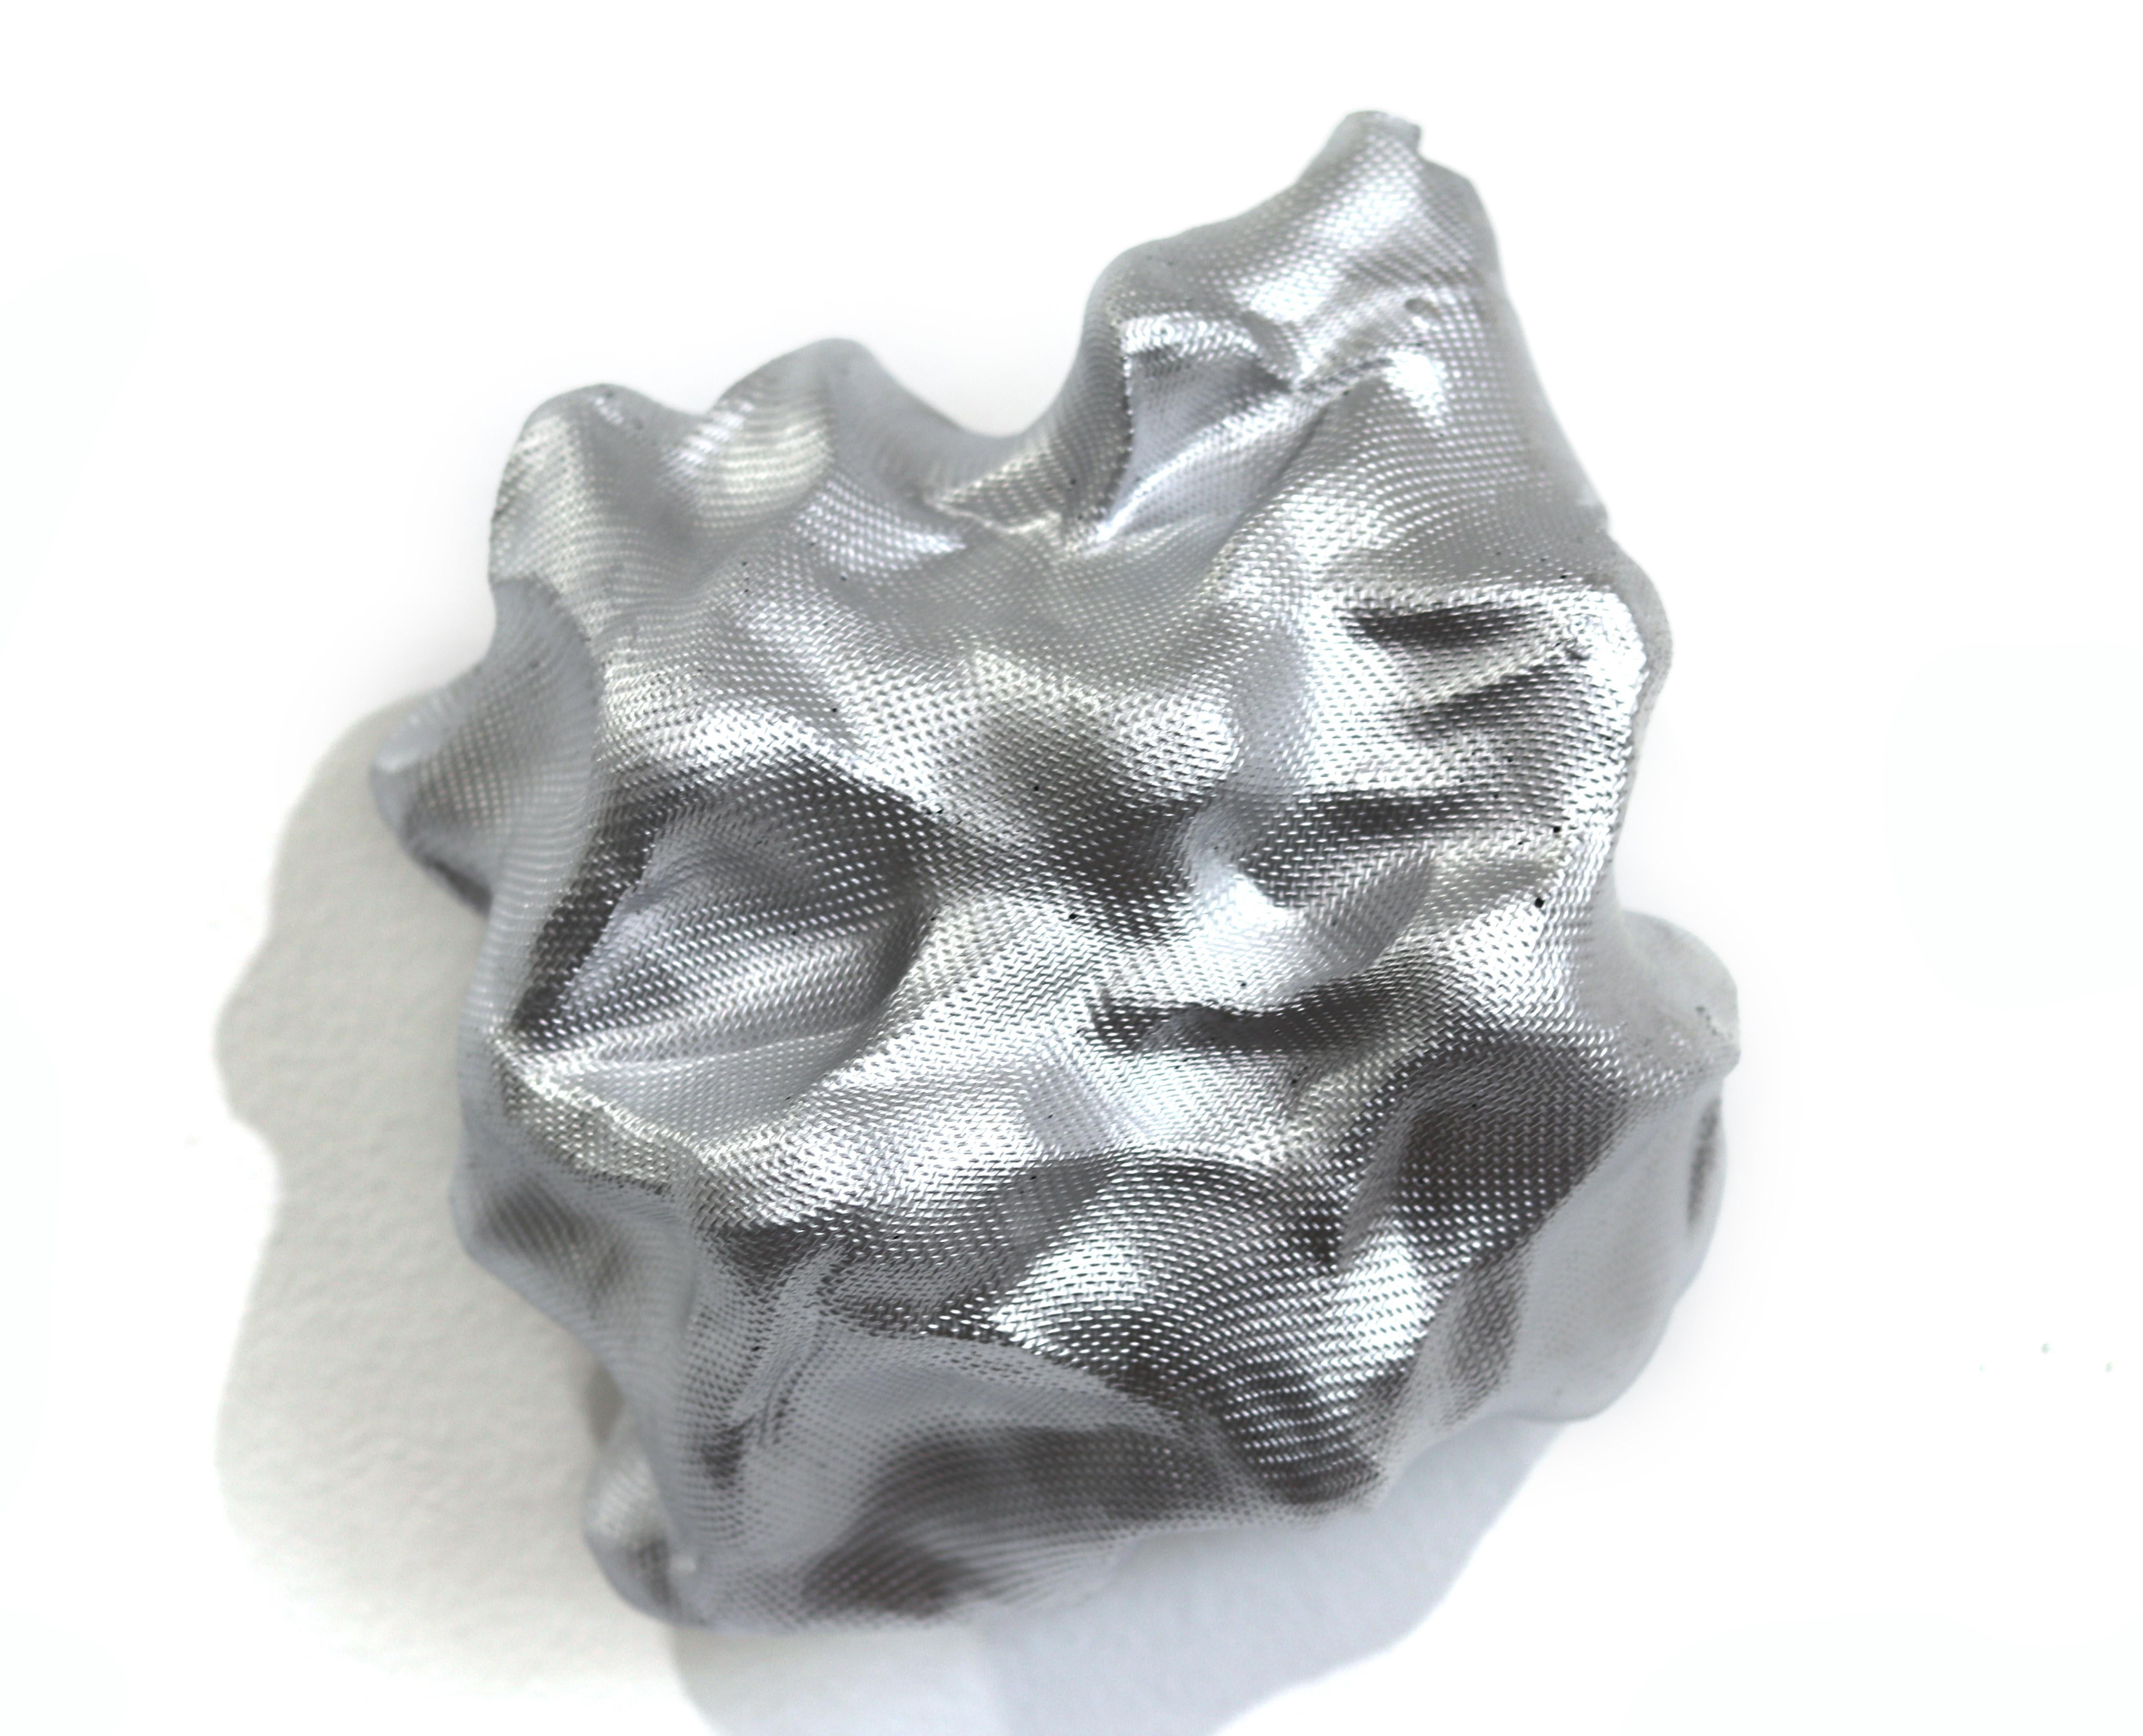 Atticus Adams Abstract Sculpture - Cloud Form Silver - Original Lightweight Metal Sculpture